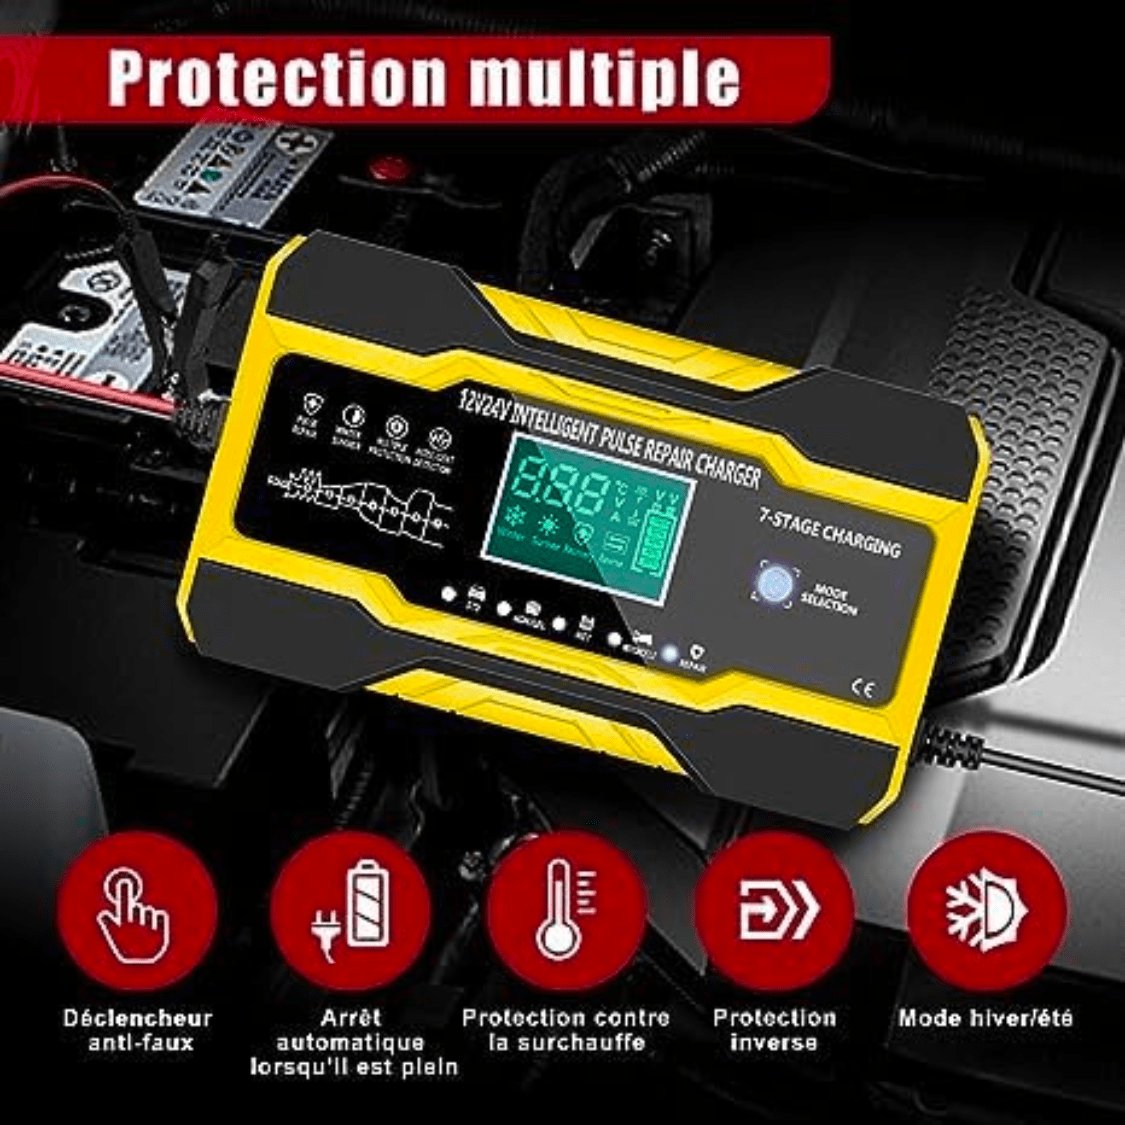 Chargeur de Batterie Intelligent pour Voiture/Moto/Camion 12V 8A/24V 4A –  OBD2 – Diagnostic automobile et voyant moteur